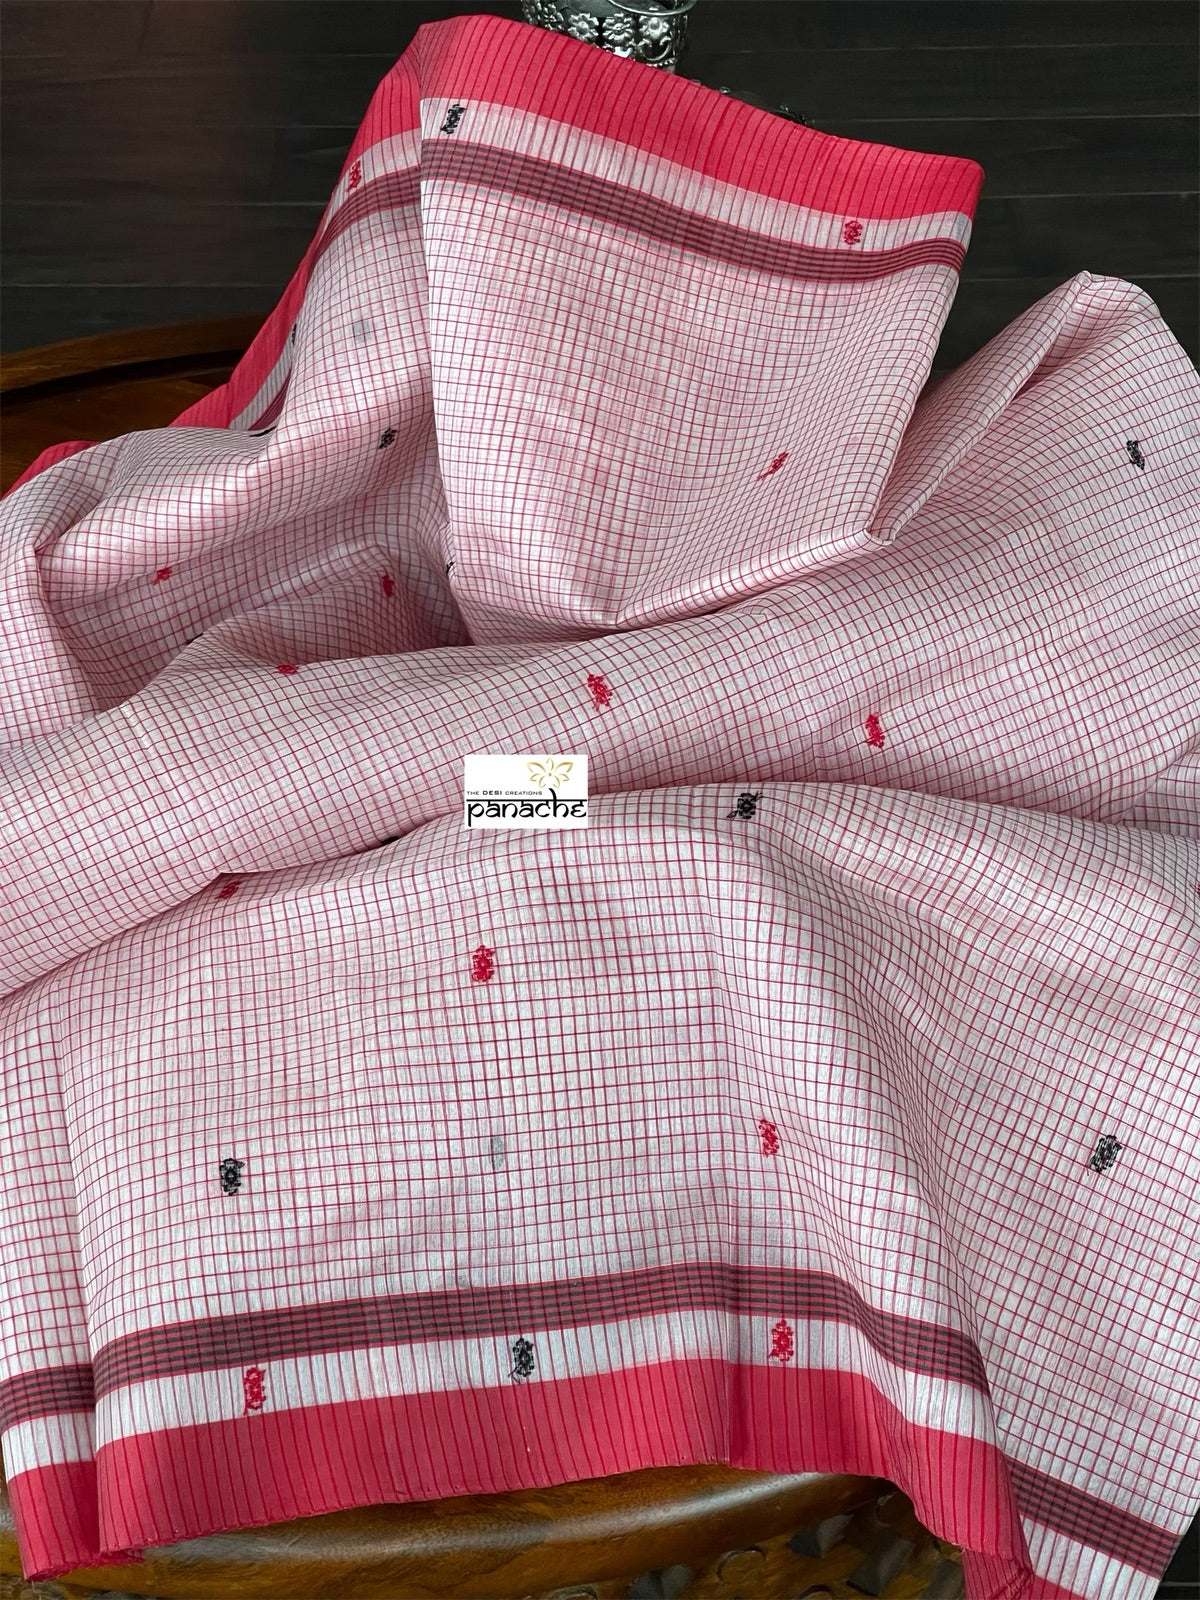 Pure Chanderi Organza Silk - Off White Red Checkered